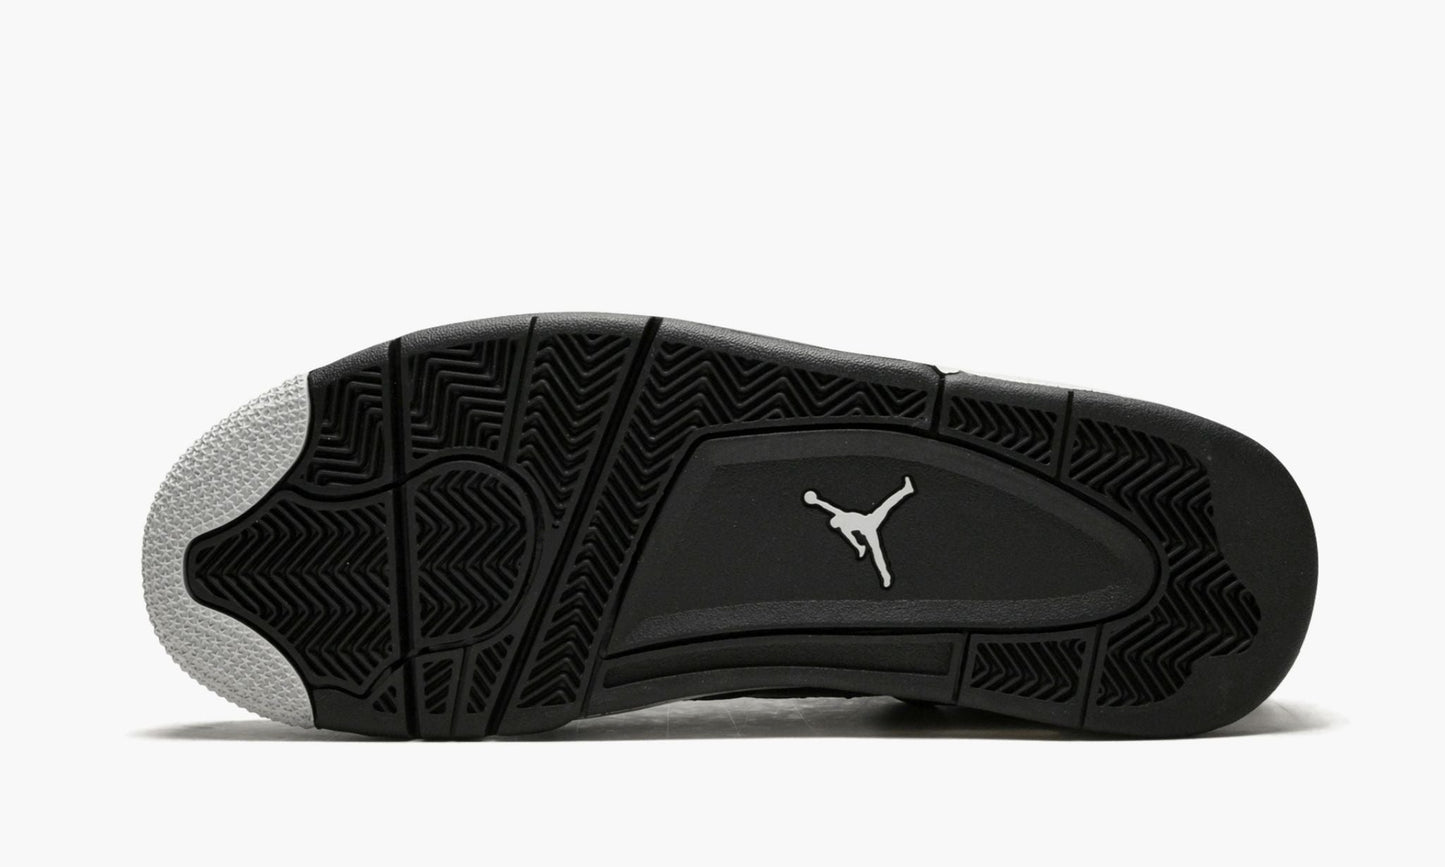 Air Jordan 4 Retro LS "Oreo"